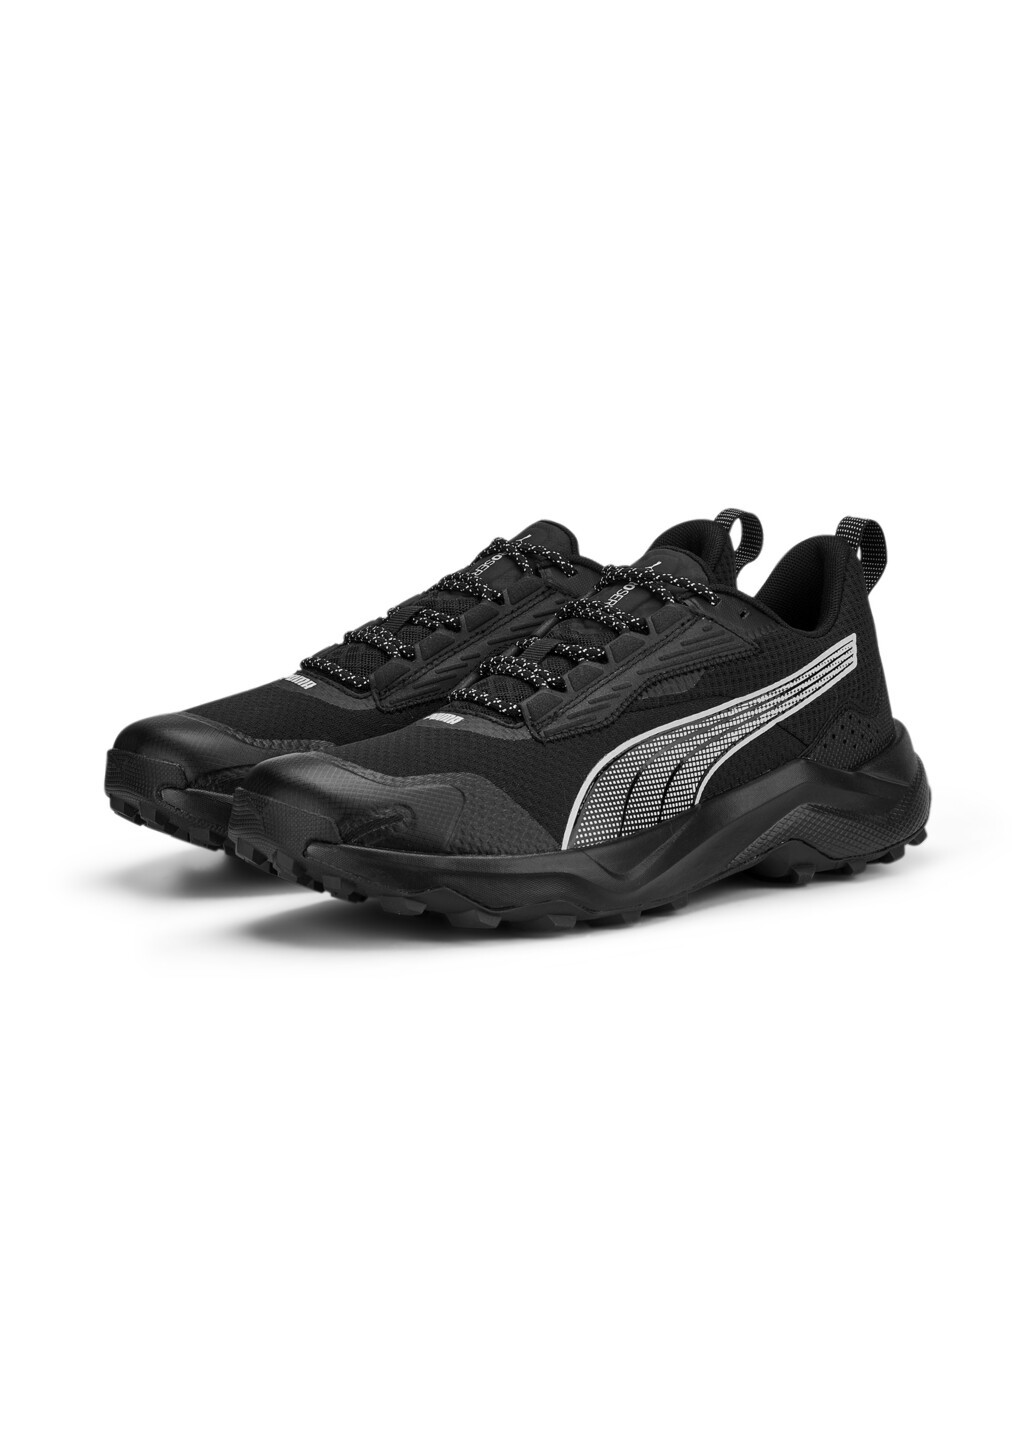 Черные всесезонные кроссовки obstruct profoam running shoes Puma